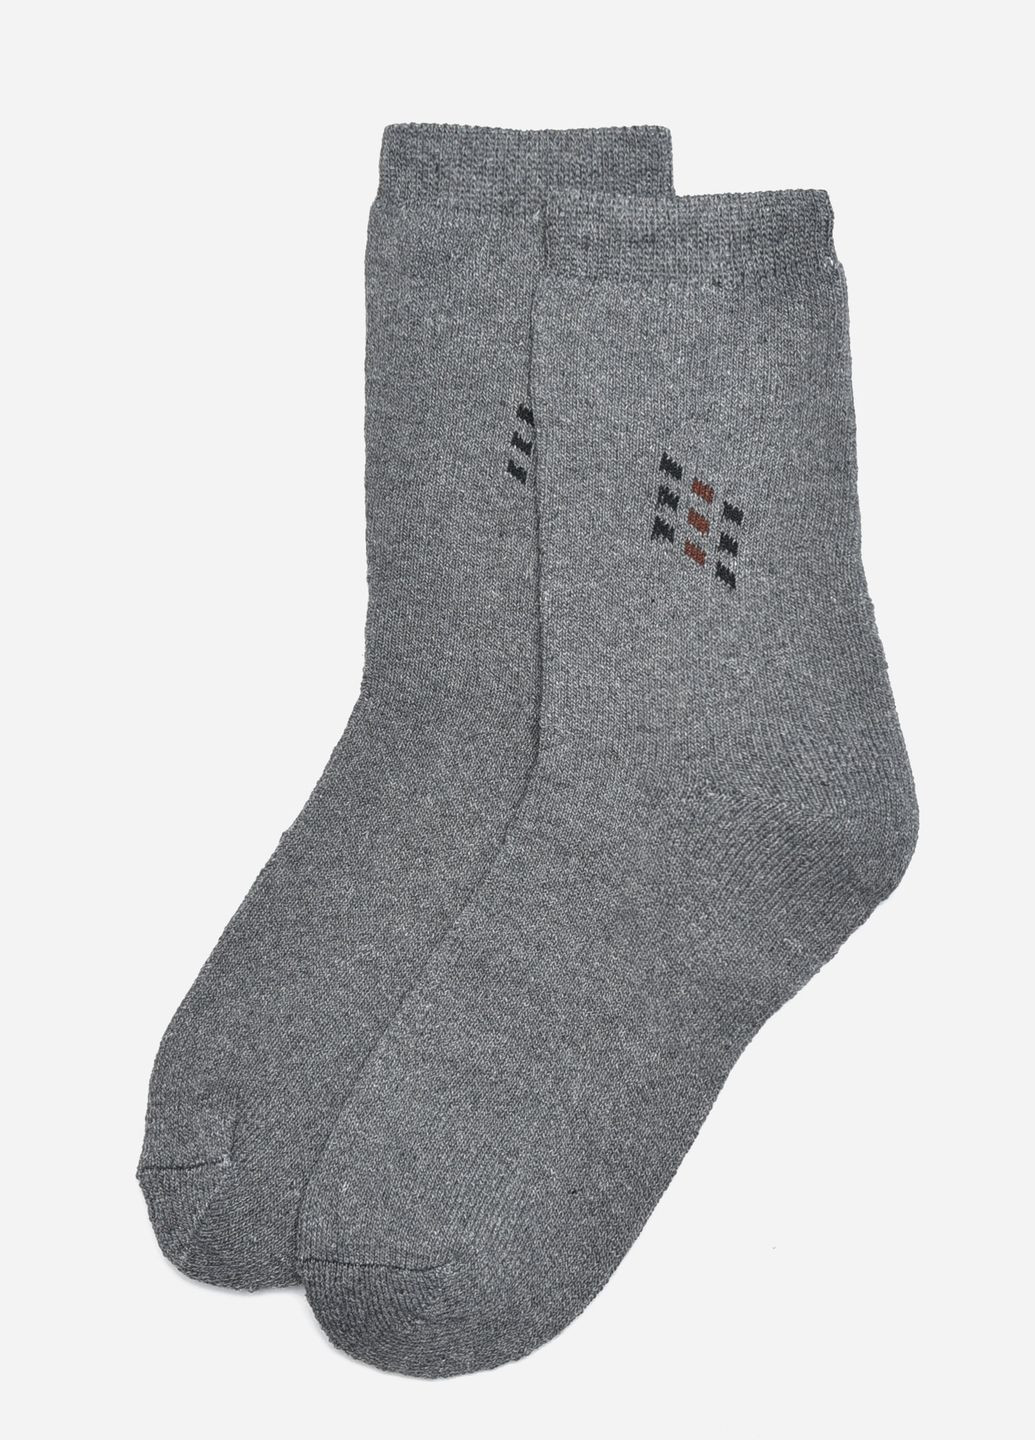 Носки махровые мужские серого цвета размер 42-48 Let's Shop (275928735)